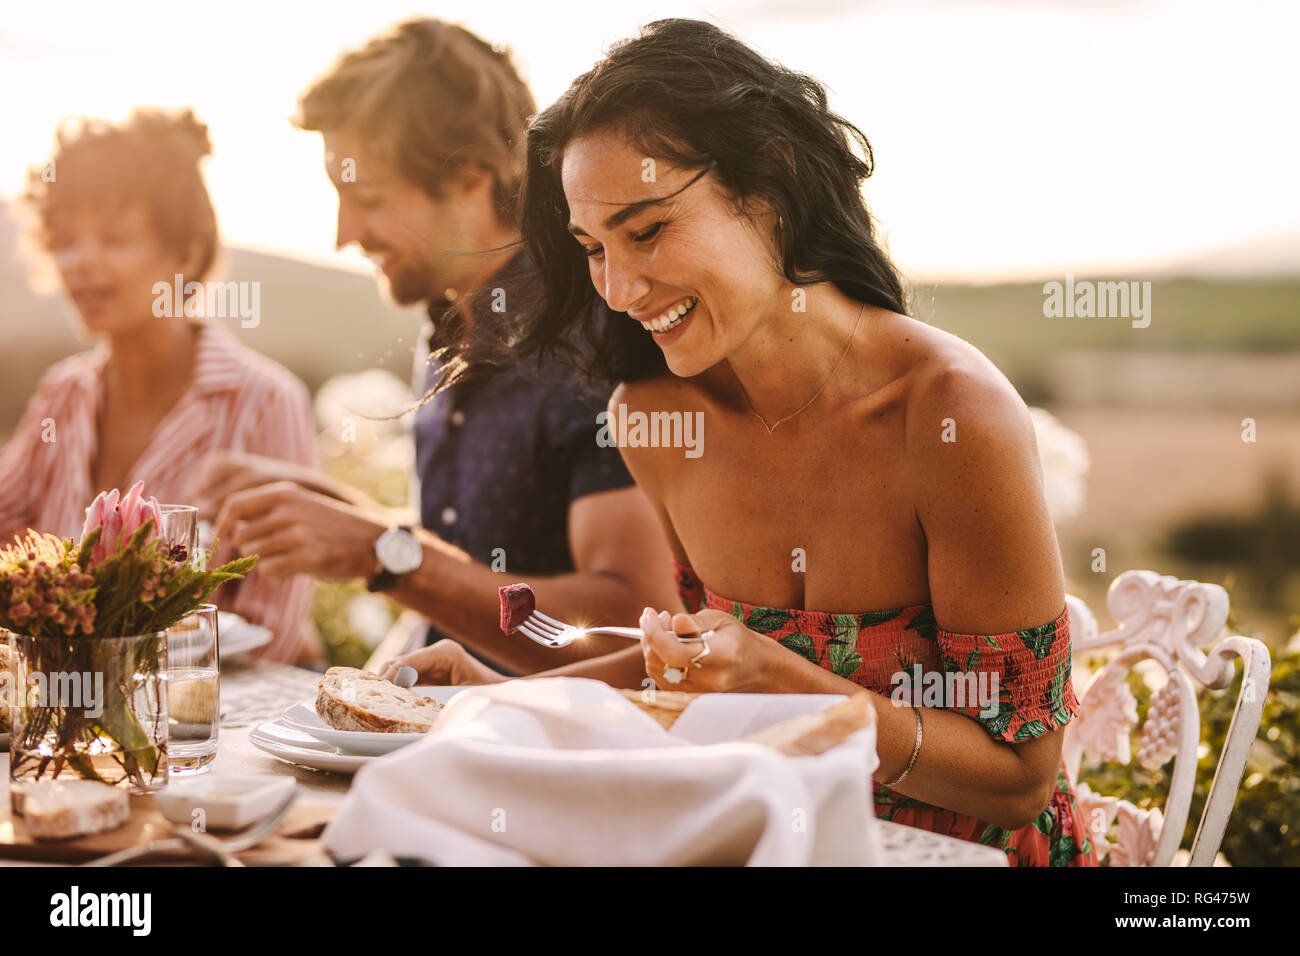 Bella donna mangiare seduti con gli amici ad una festa all'aperto. Donna godendo avente il cibo con gli amici a una festa. Foto Stock